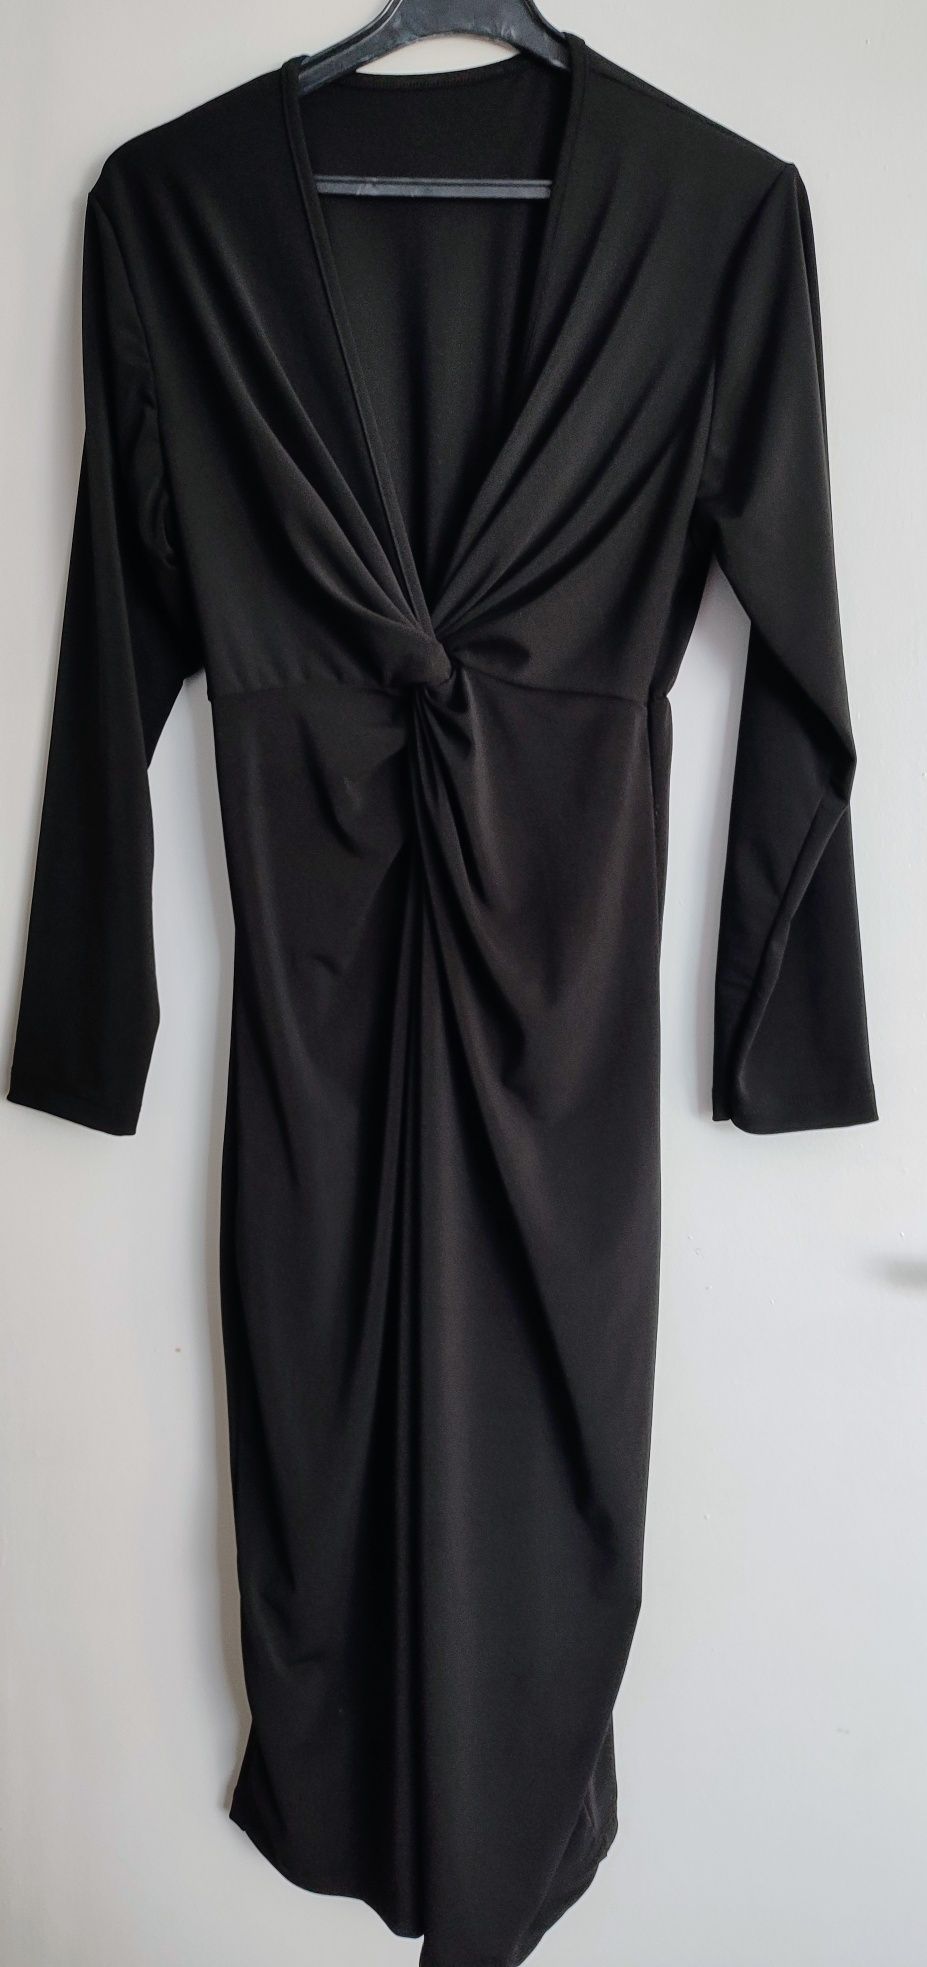 Sukienka damska wizytowa czarna rozmiar 42